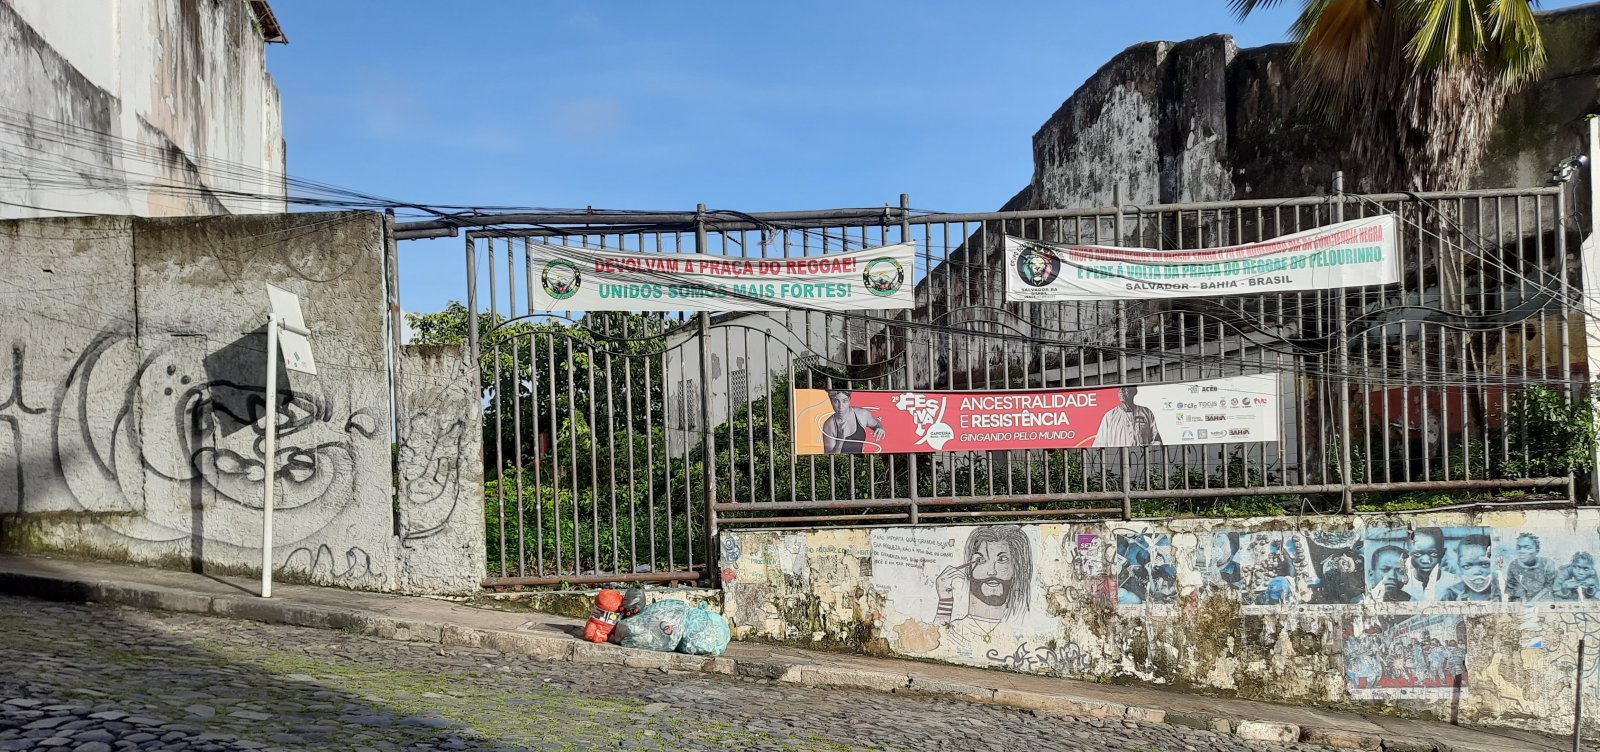 Praça do Reggae completa 25 anos amargando abandono em pleno Largo do Pelourinho